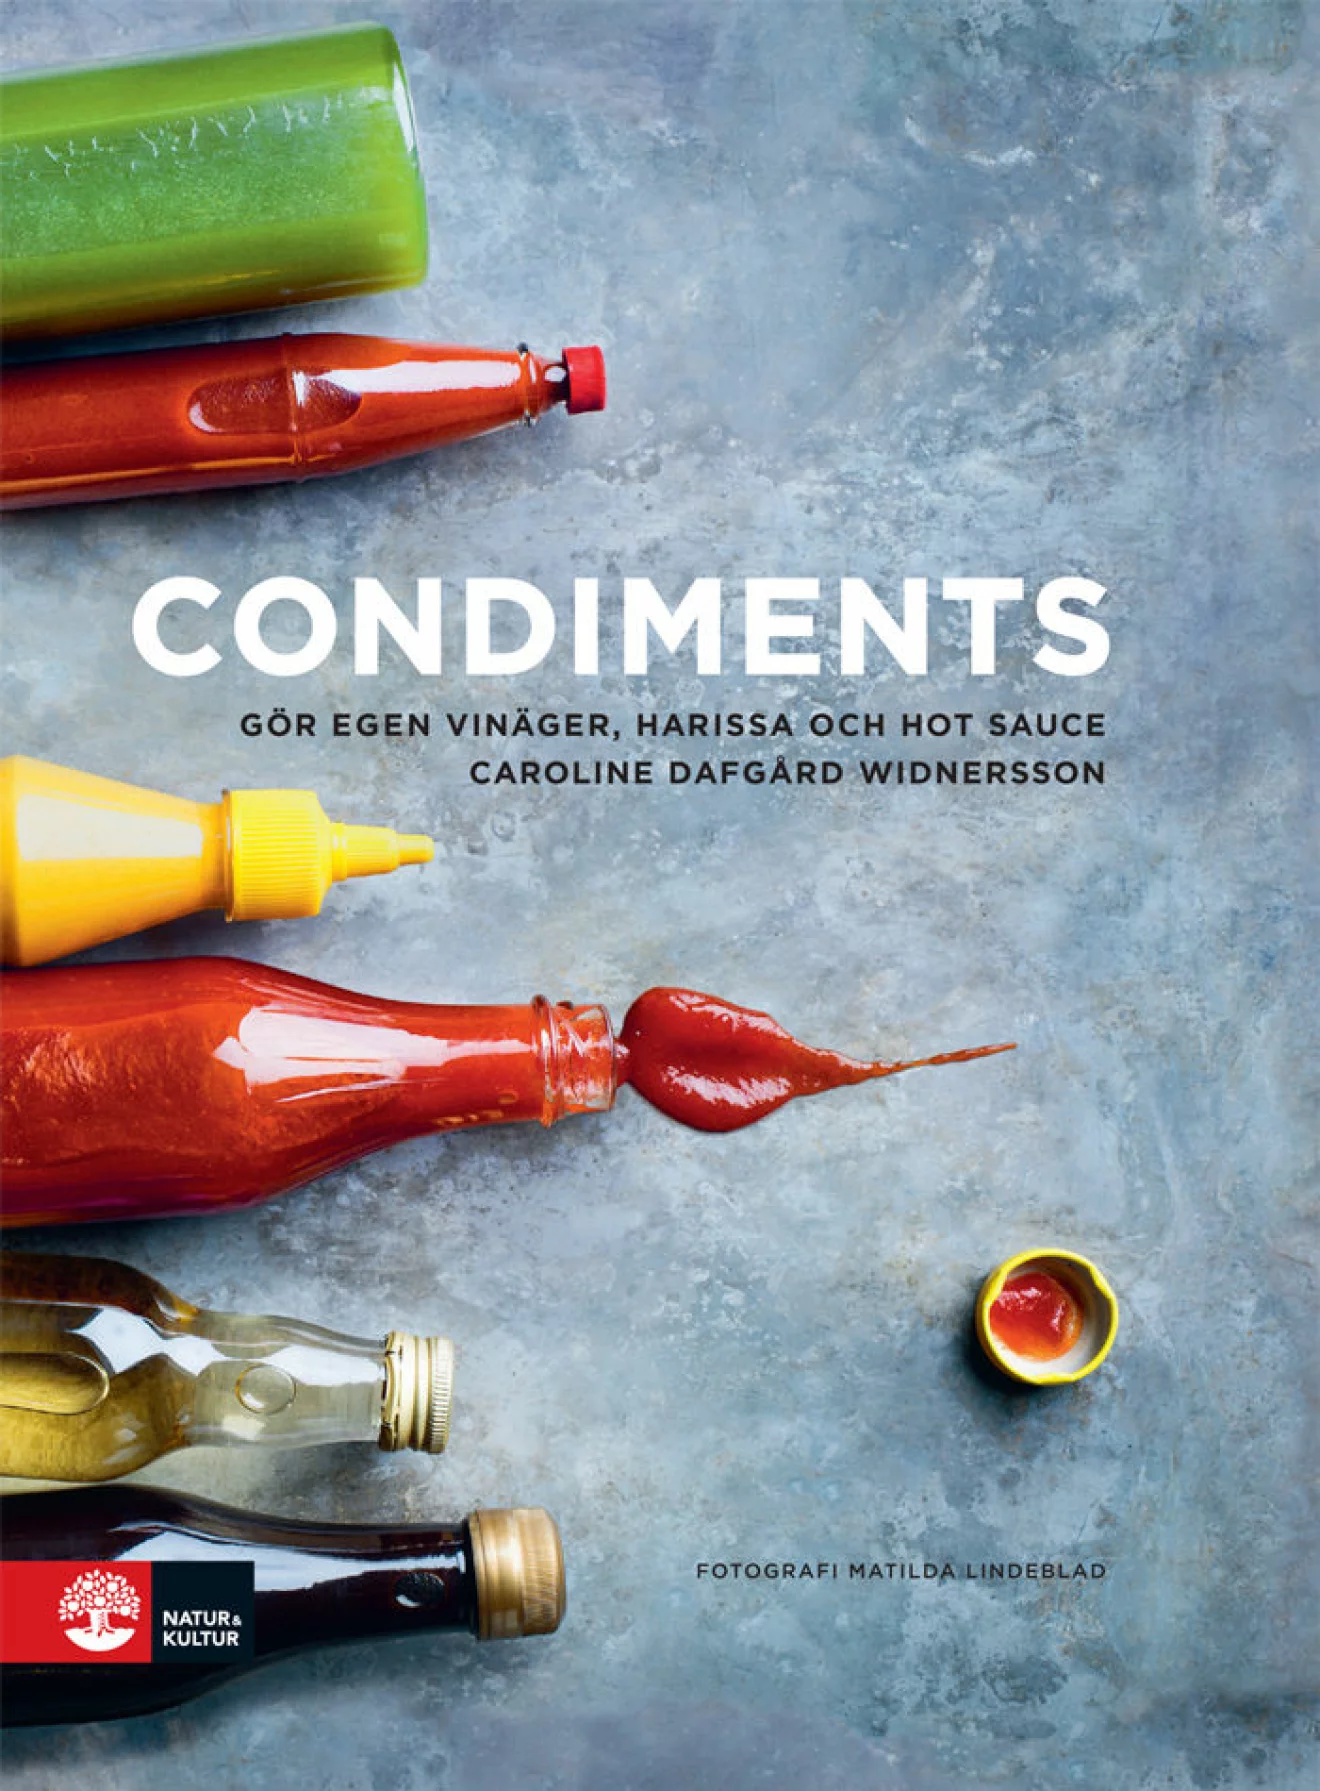 Condiments: Gör egen vinäger, harissa och hot sauce.